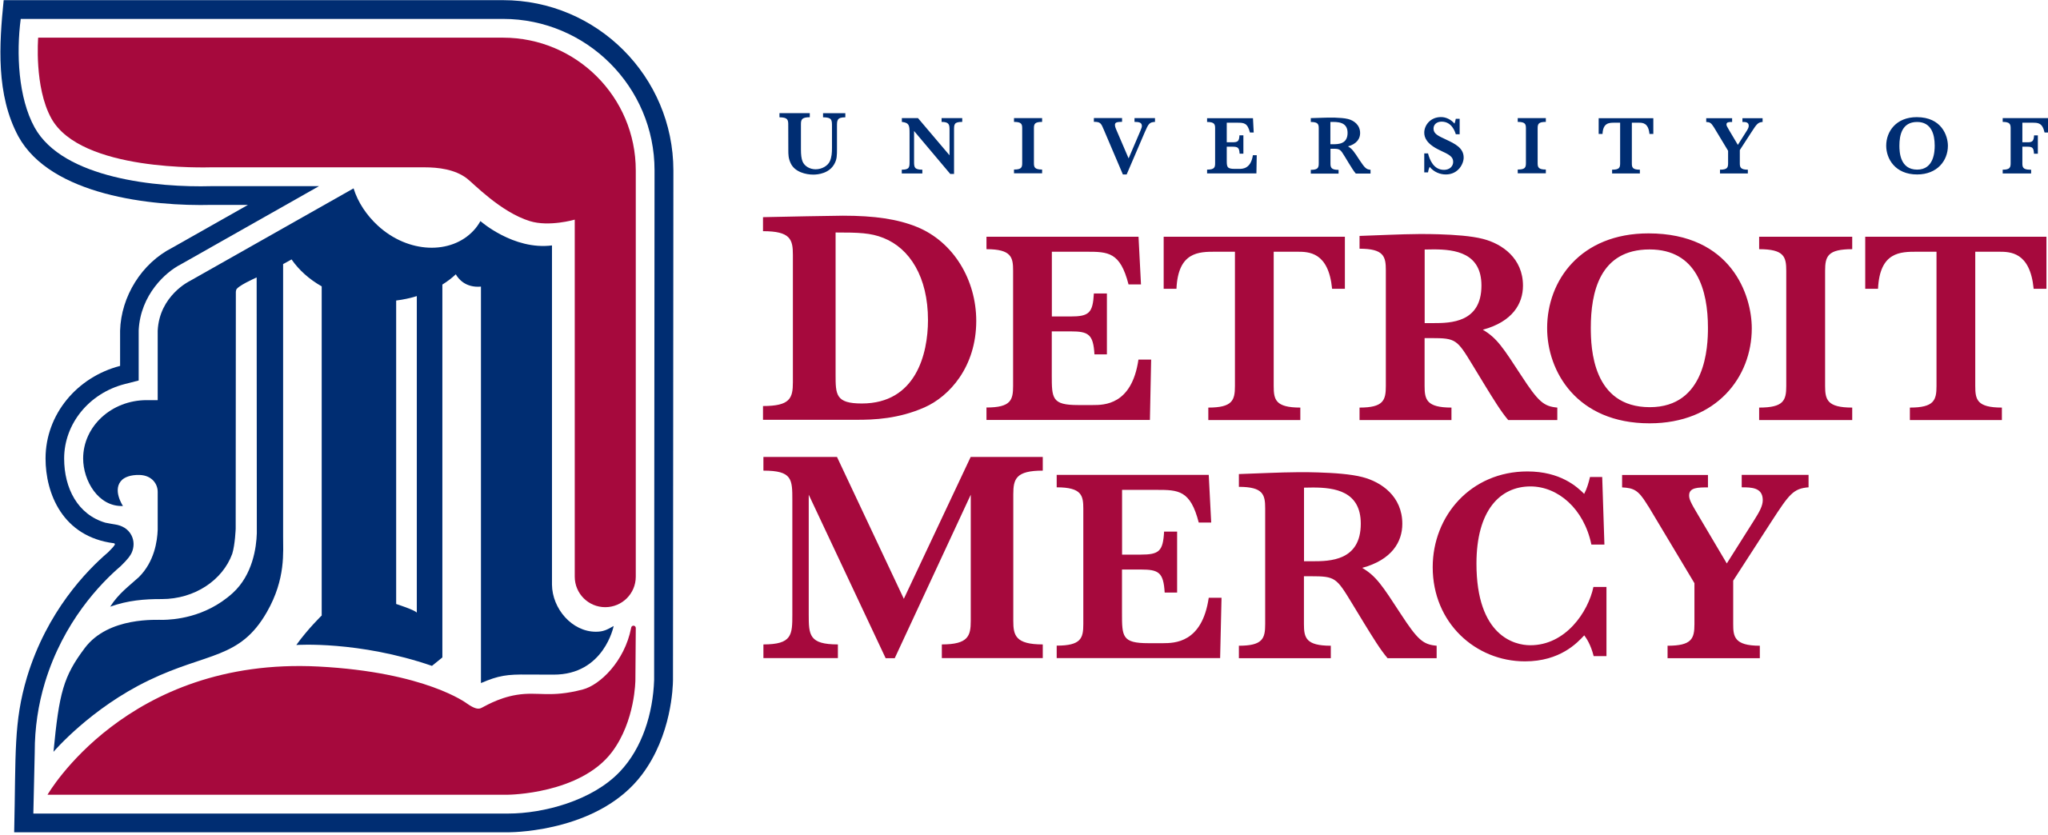 University_of_Detroit_Mercy_new_logo